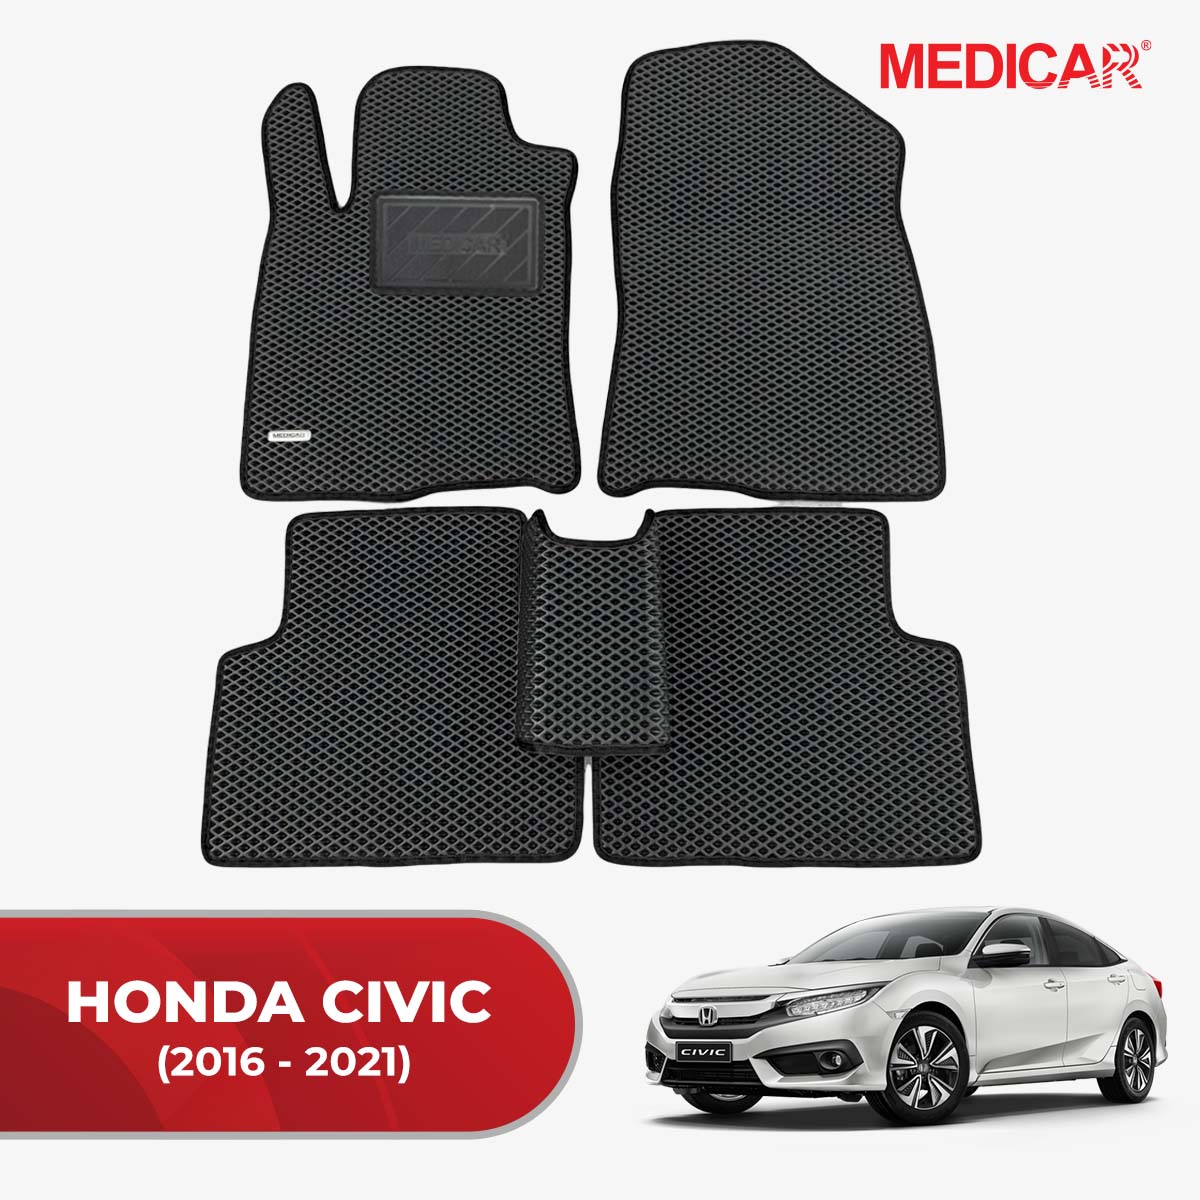 Thảm lót sàn ô tô Medicar cho xe Honda Civic- chống nước, không mùi